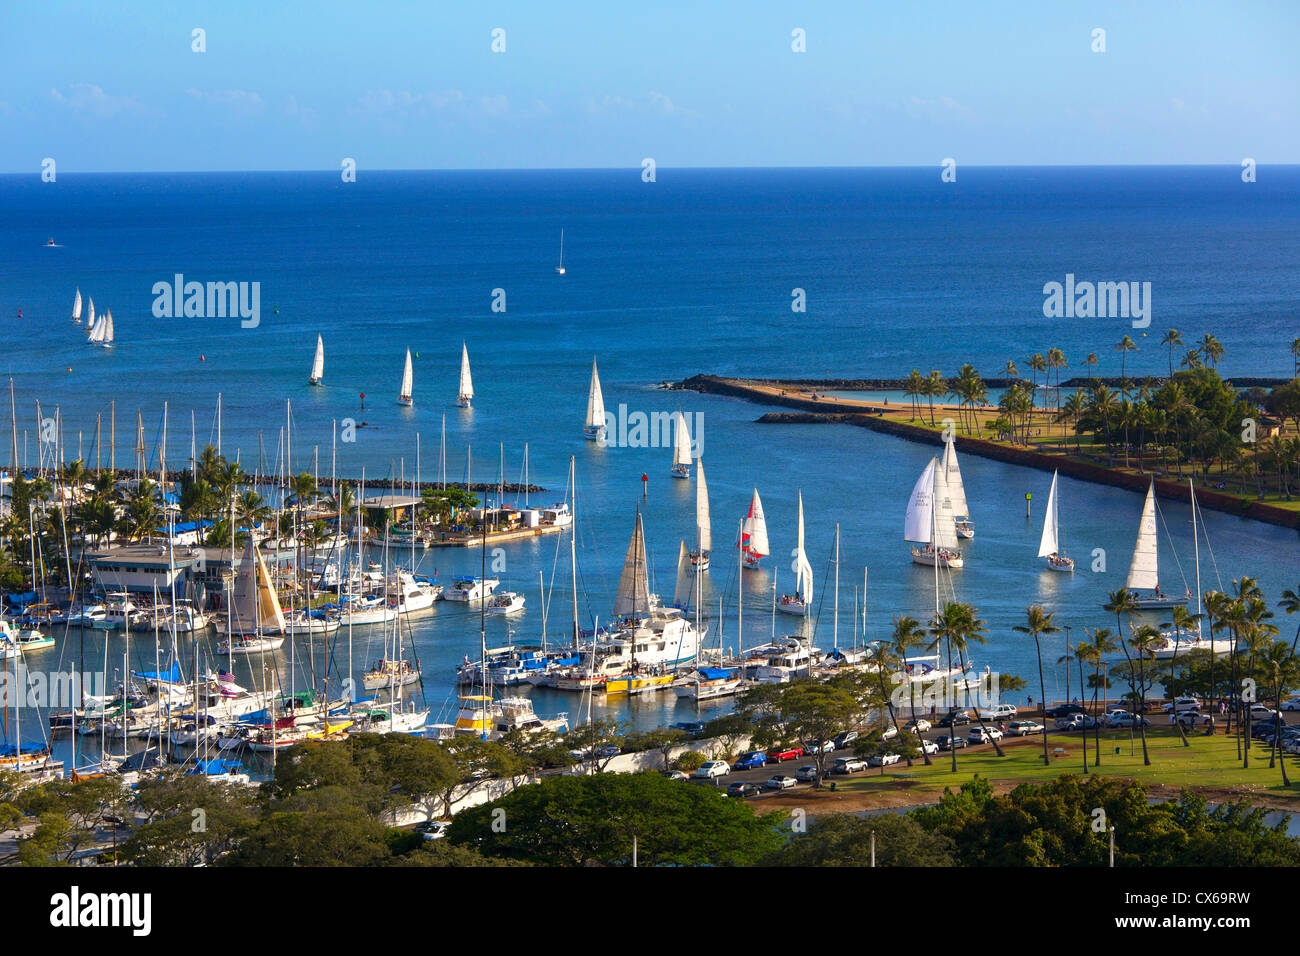 Ala Wai Yacht Harbour, Waikiki, Oahu, Hawaii Banque D'Images